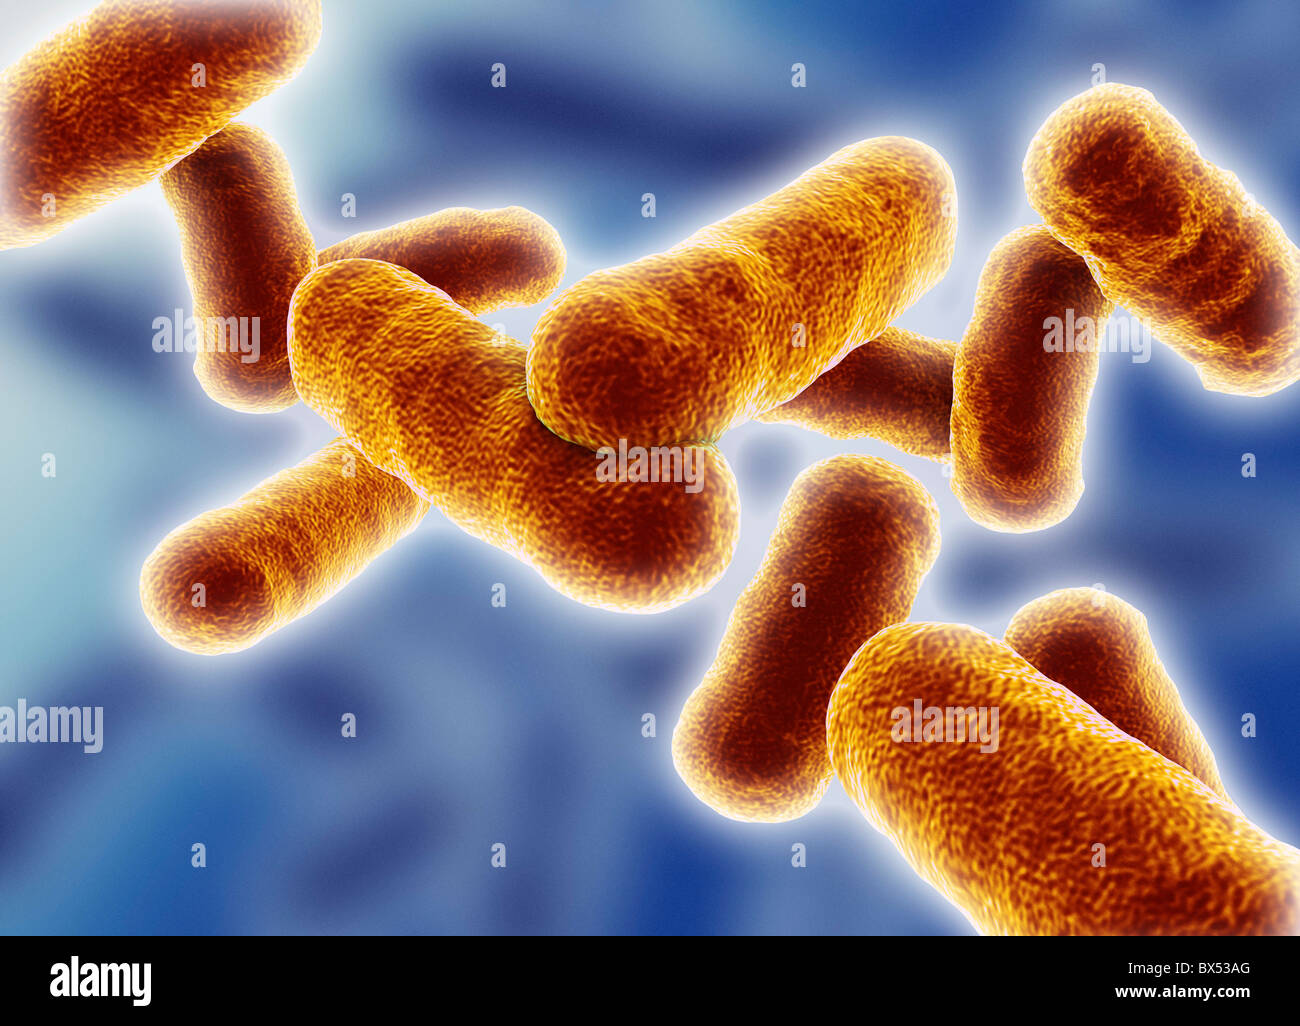 Rod shaped bacillus bacteria Stock Photo